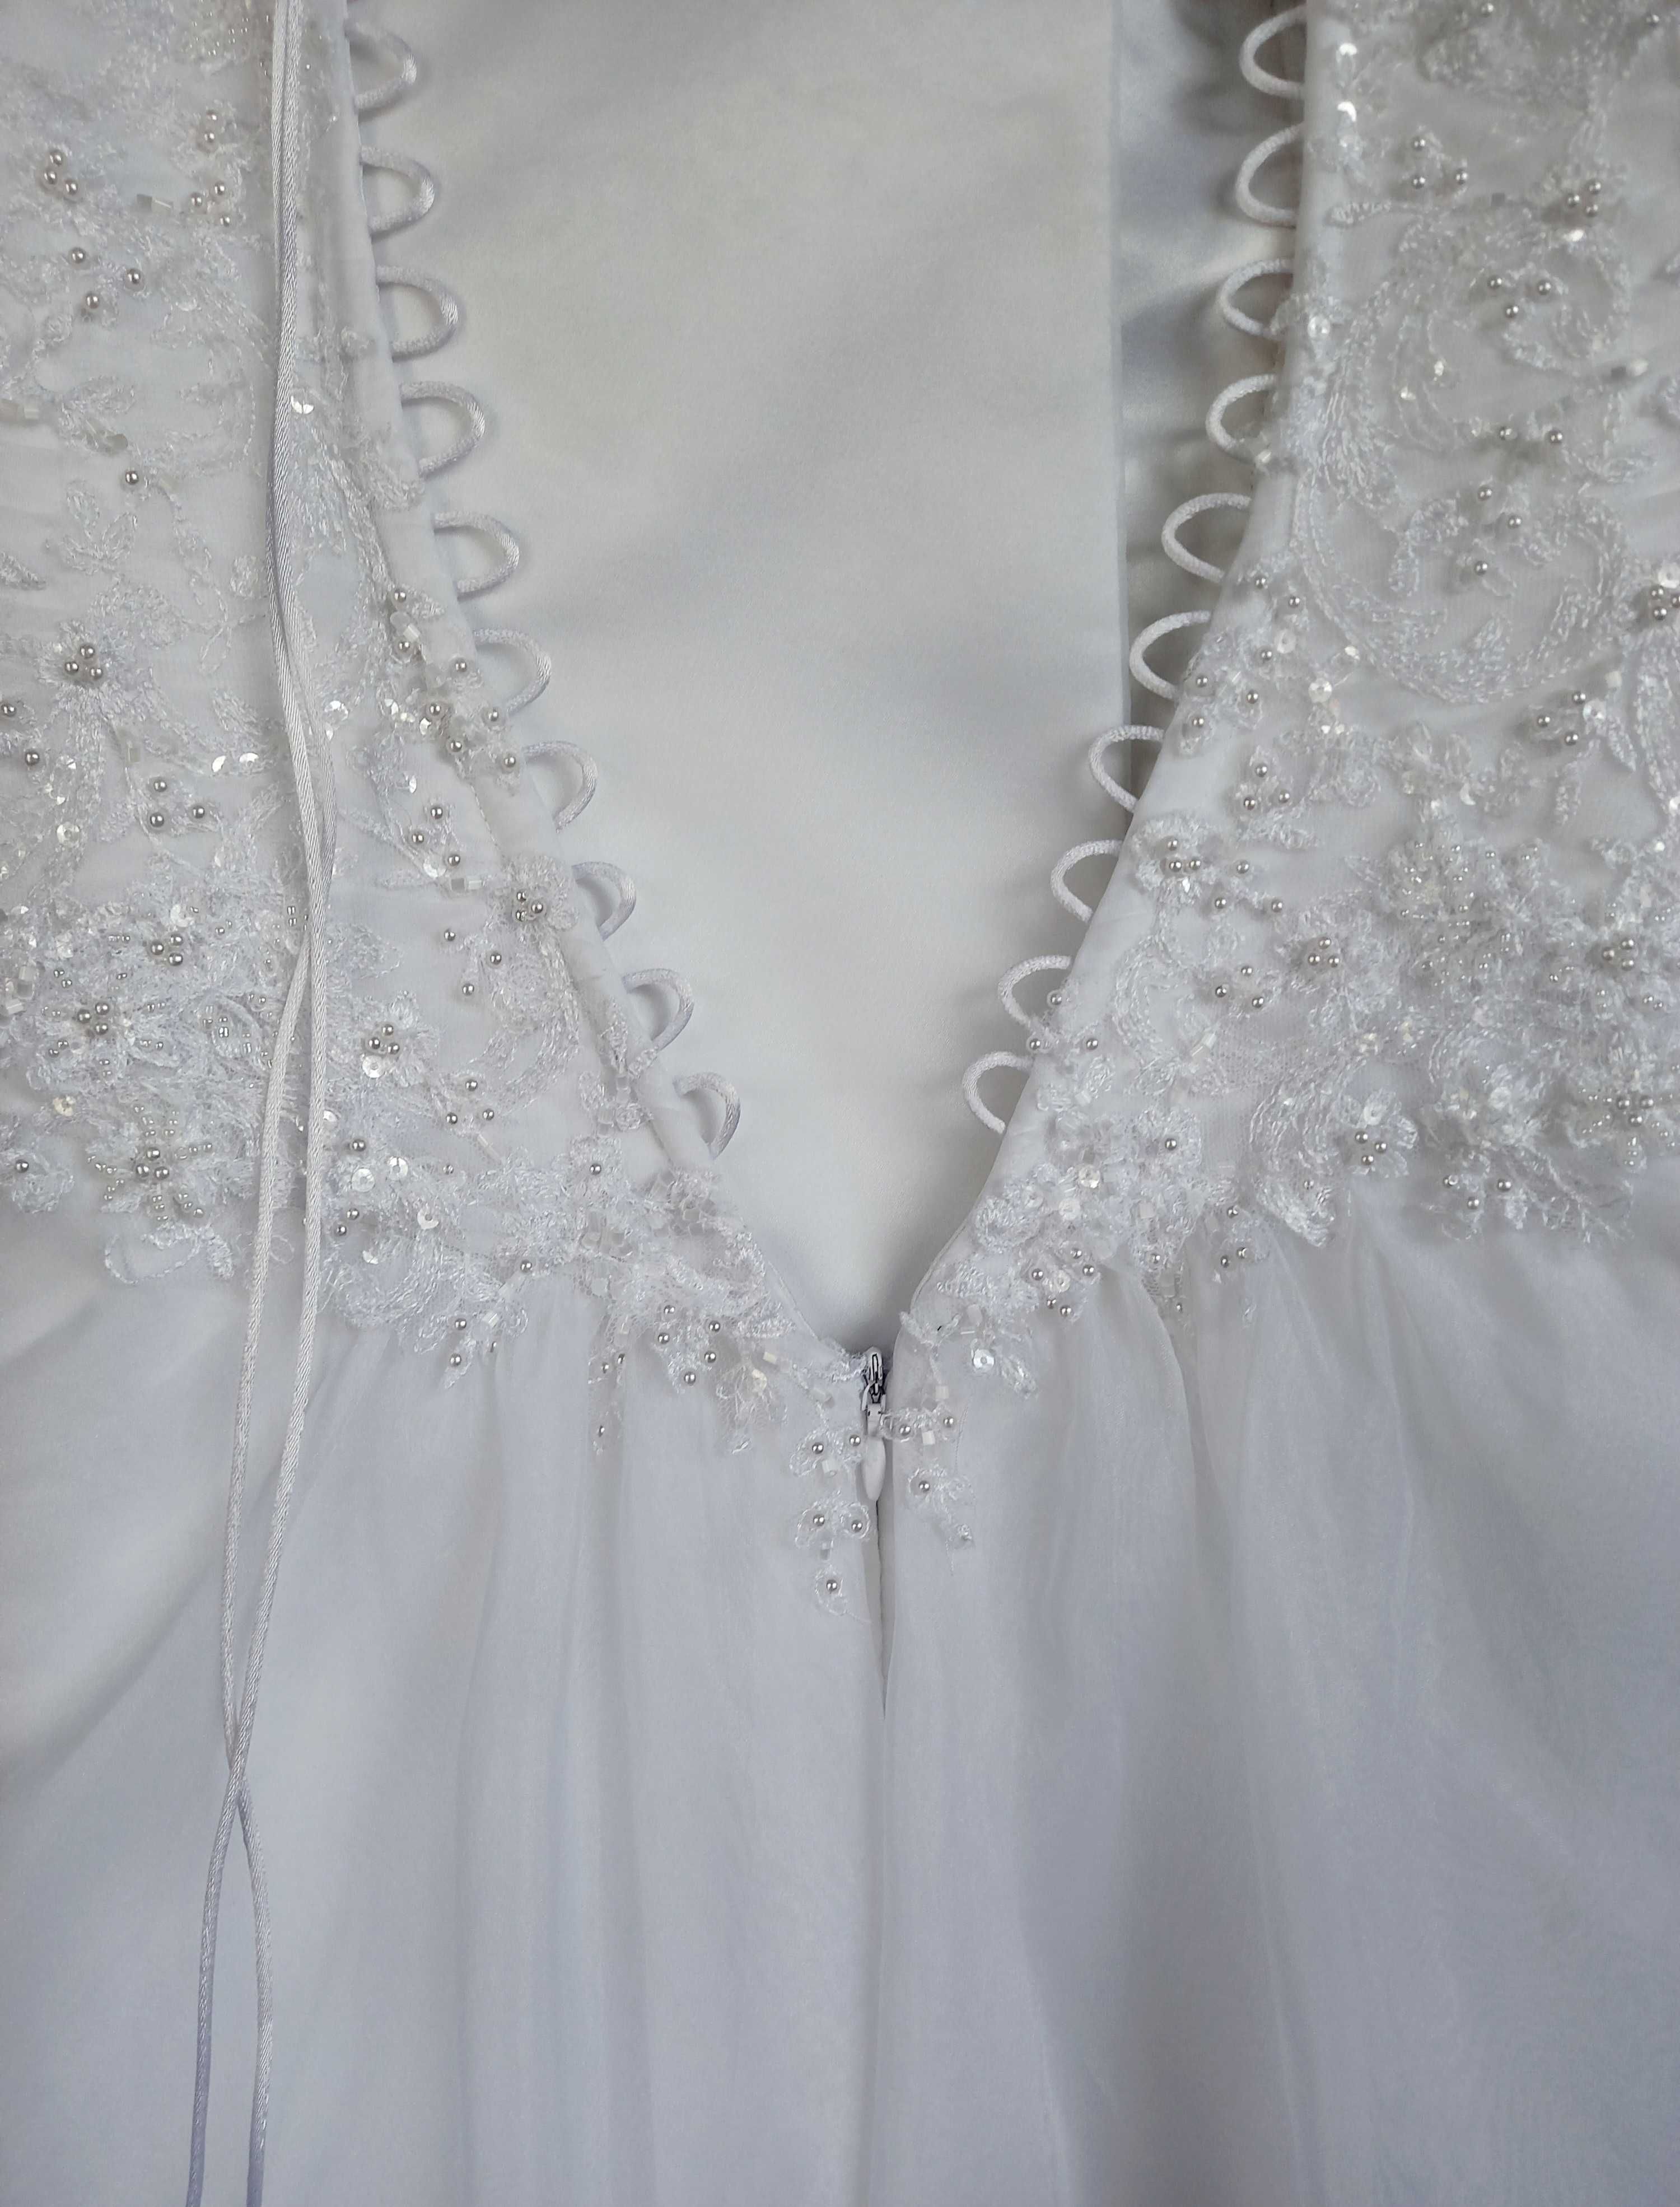 Piękna biała suknia ślubna rozm. 42-44 koronka wyszywana koralikami